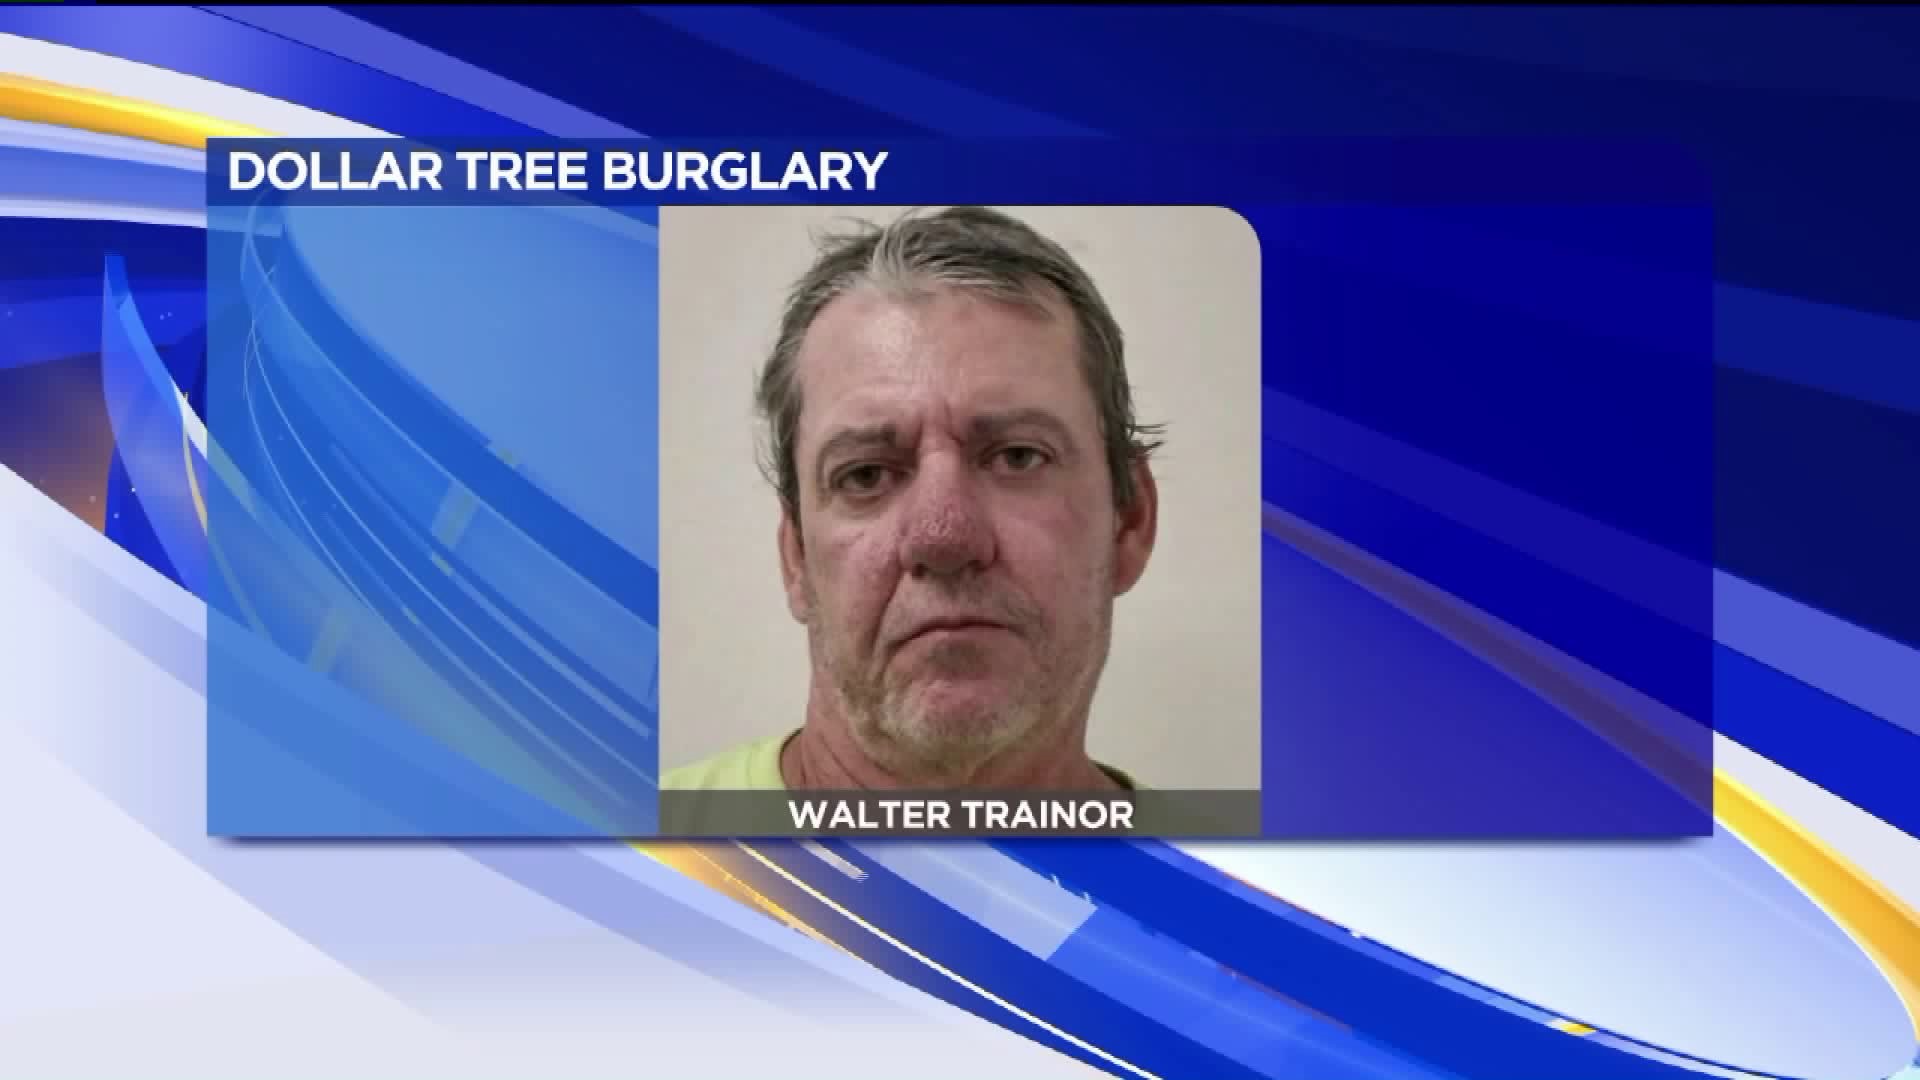 Dollar Tree Burglar Arrested